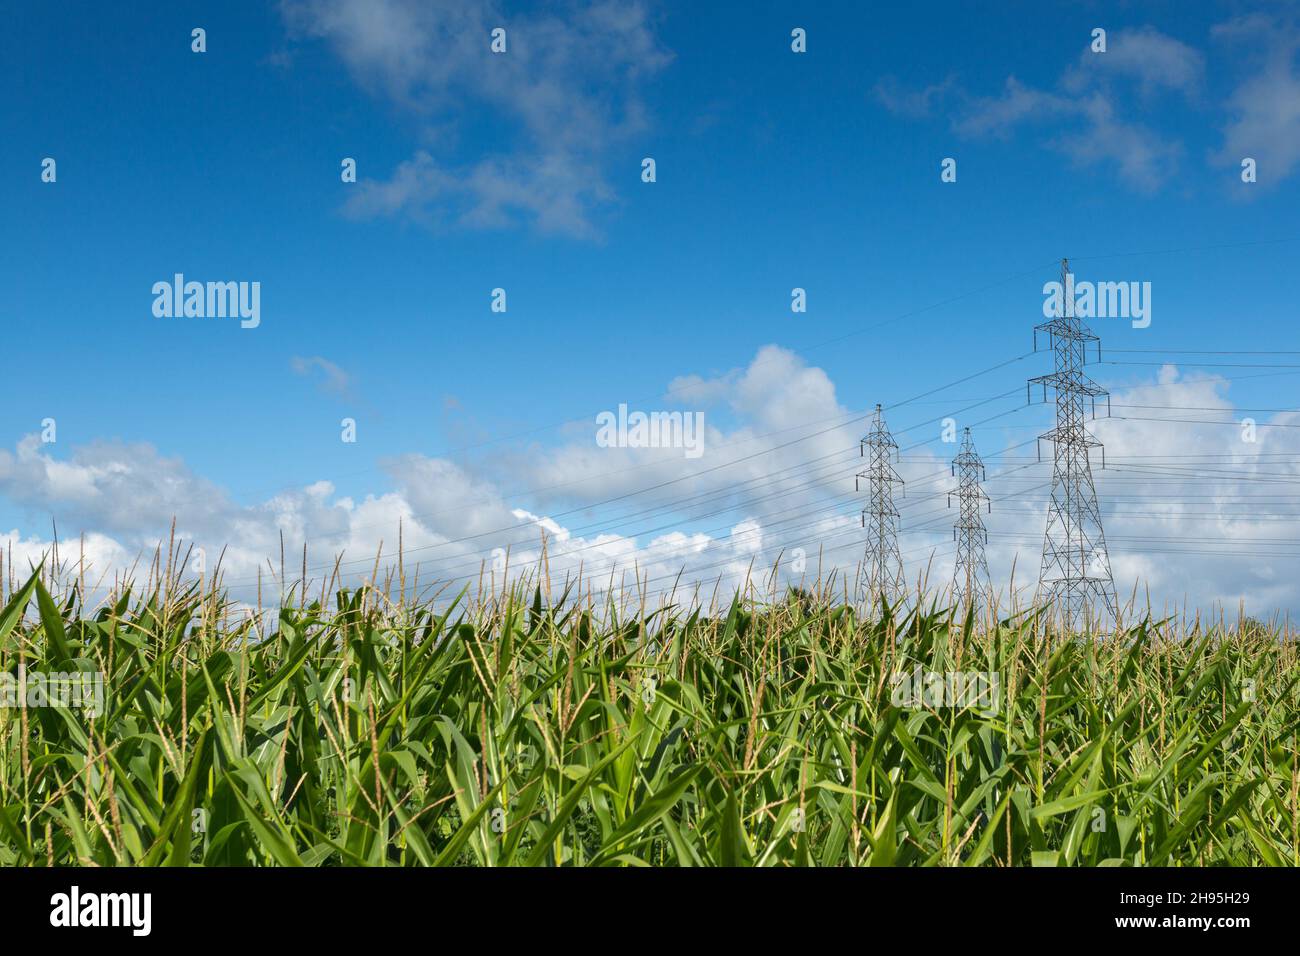 Drei elektrischen Pylonen mit elektrischen Leitungen in einem Maisfeld mit blauen schüchtern und weiße Wolken Stockfoto